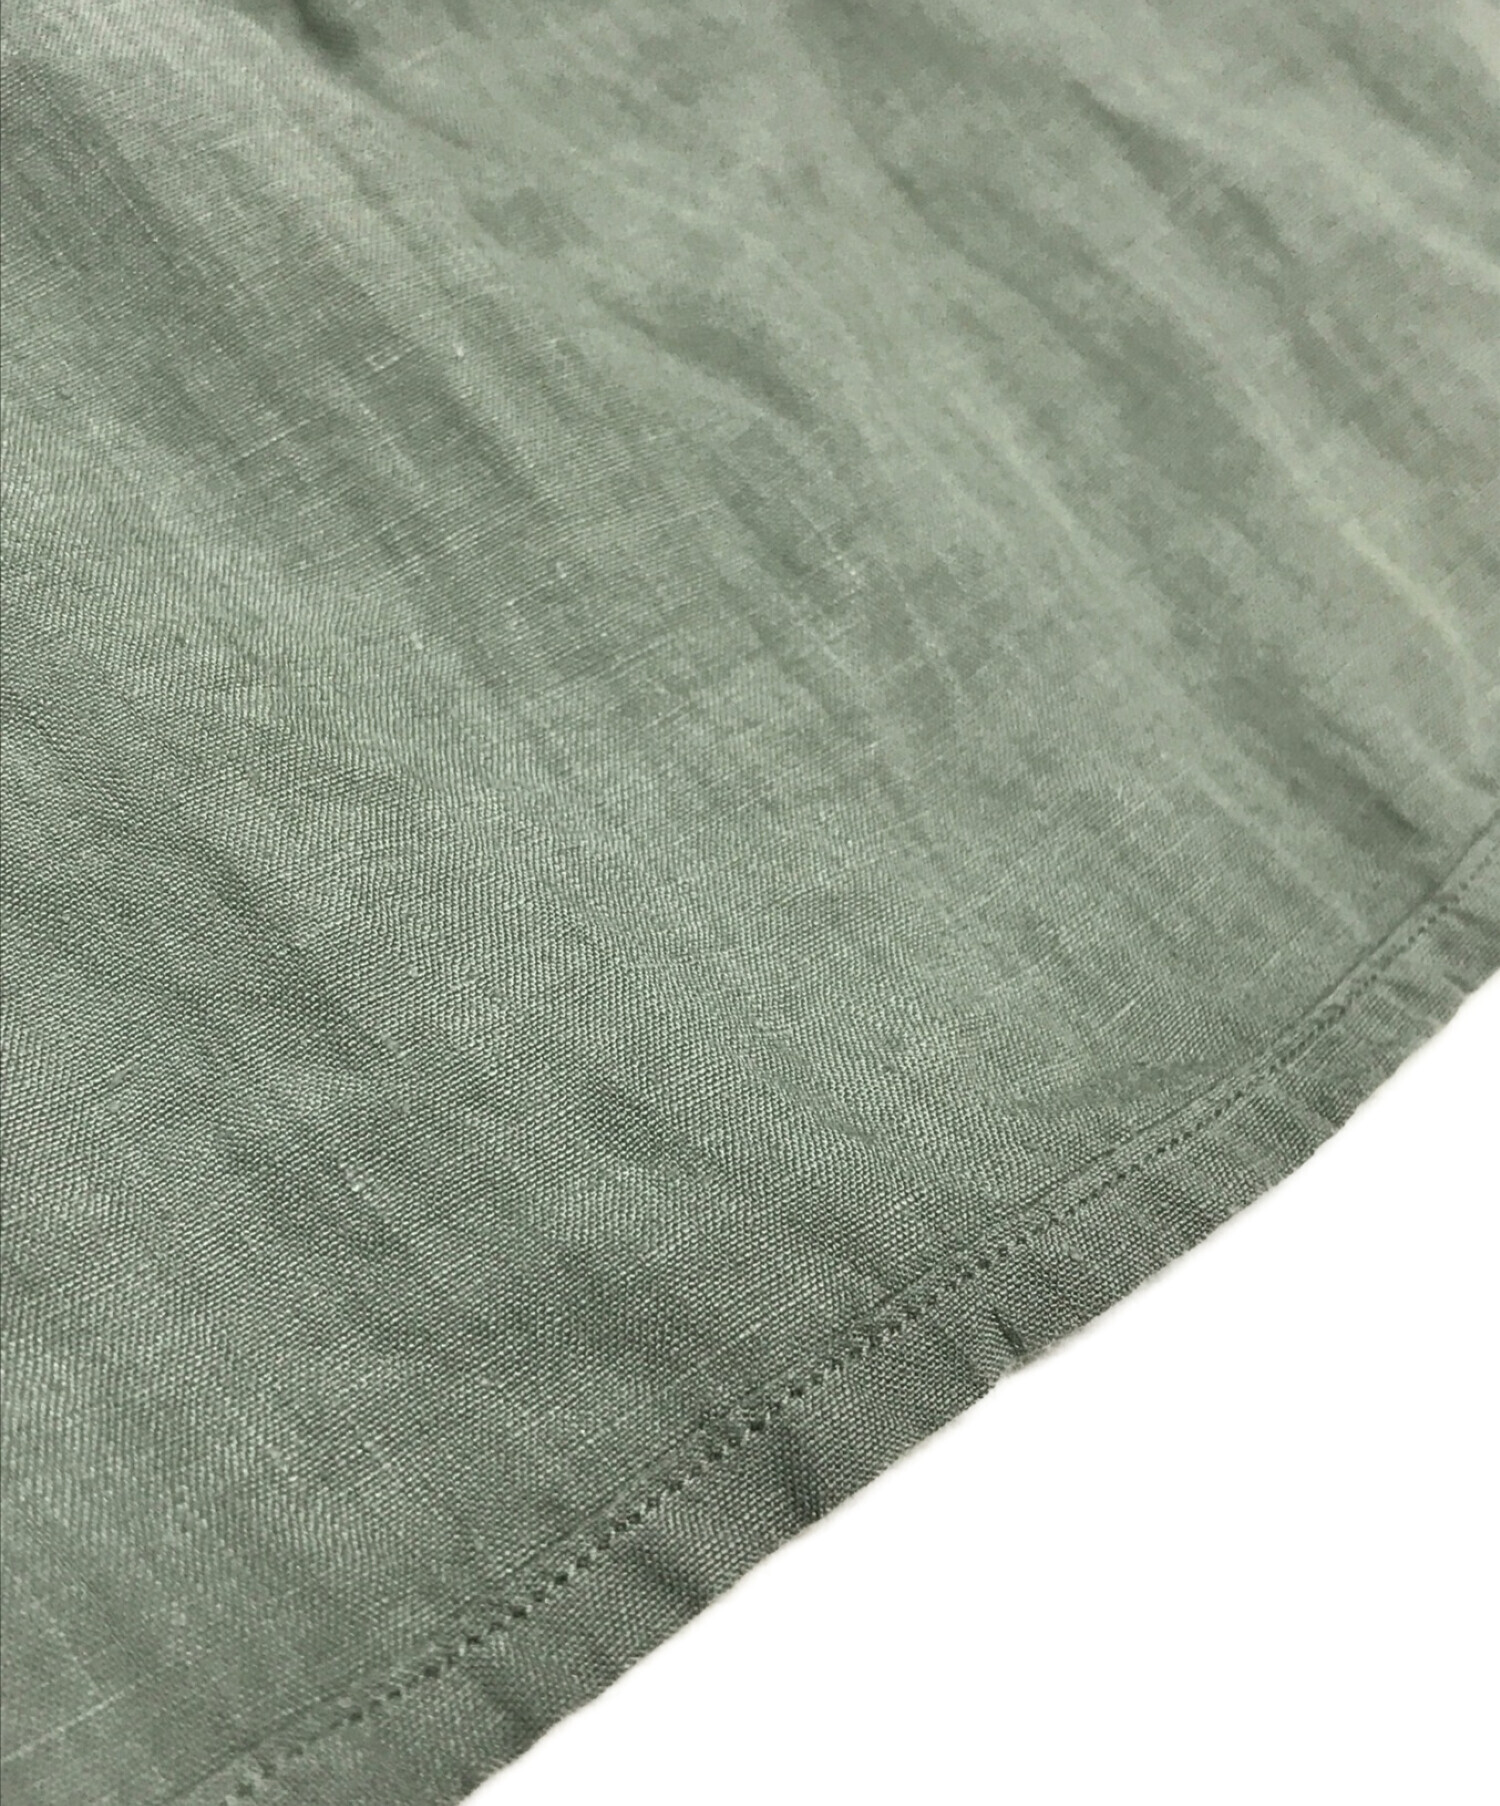 nestrobe confect (ネストローブ コンフェクト) ハイカウント リネン レギュラーカラーシャツ グリーン サイズ:3